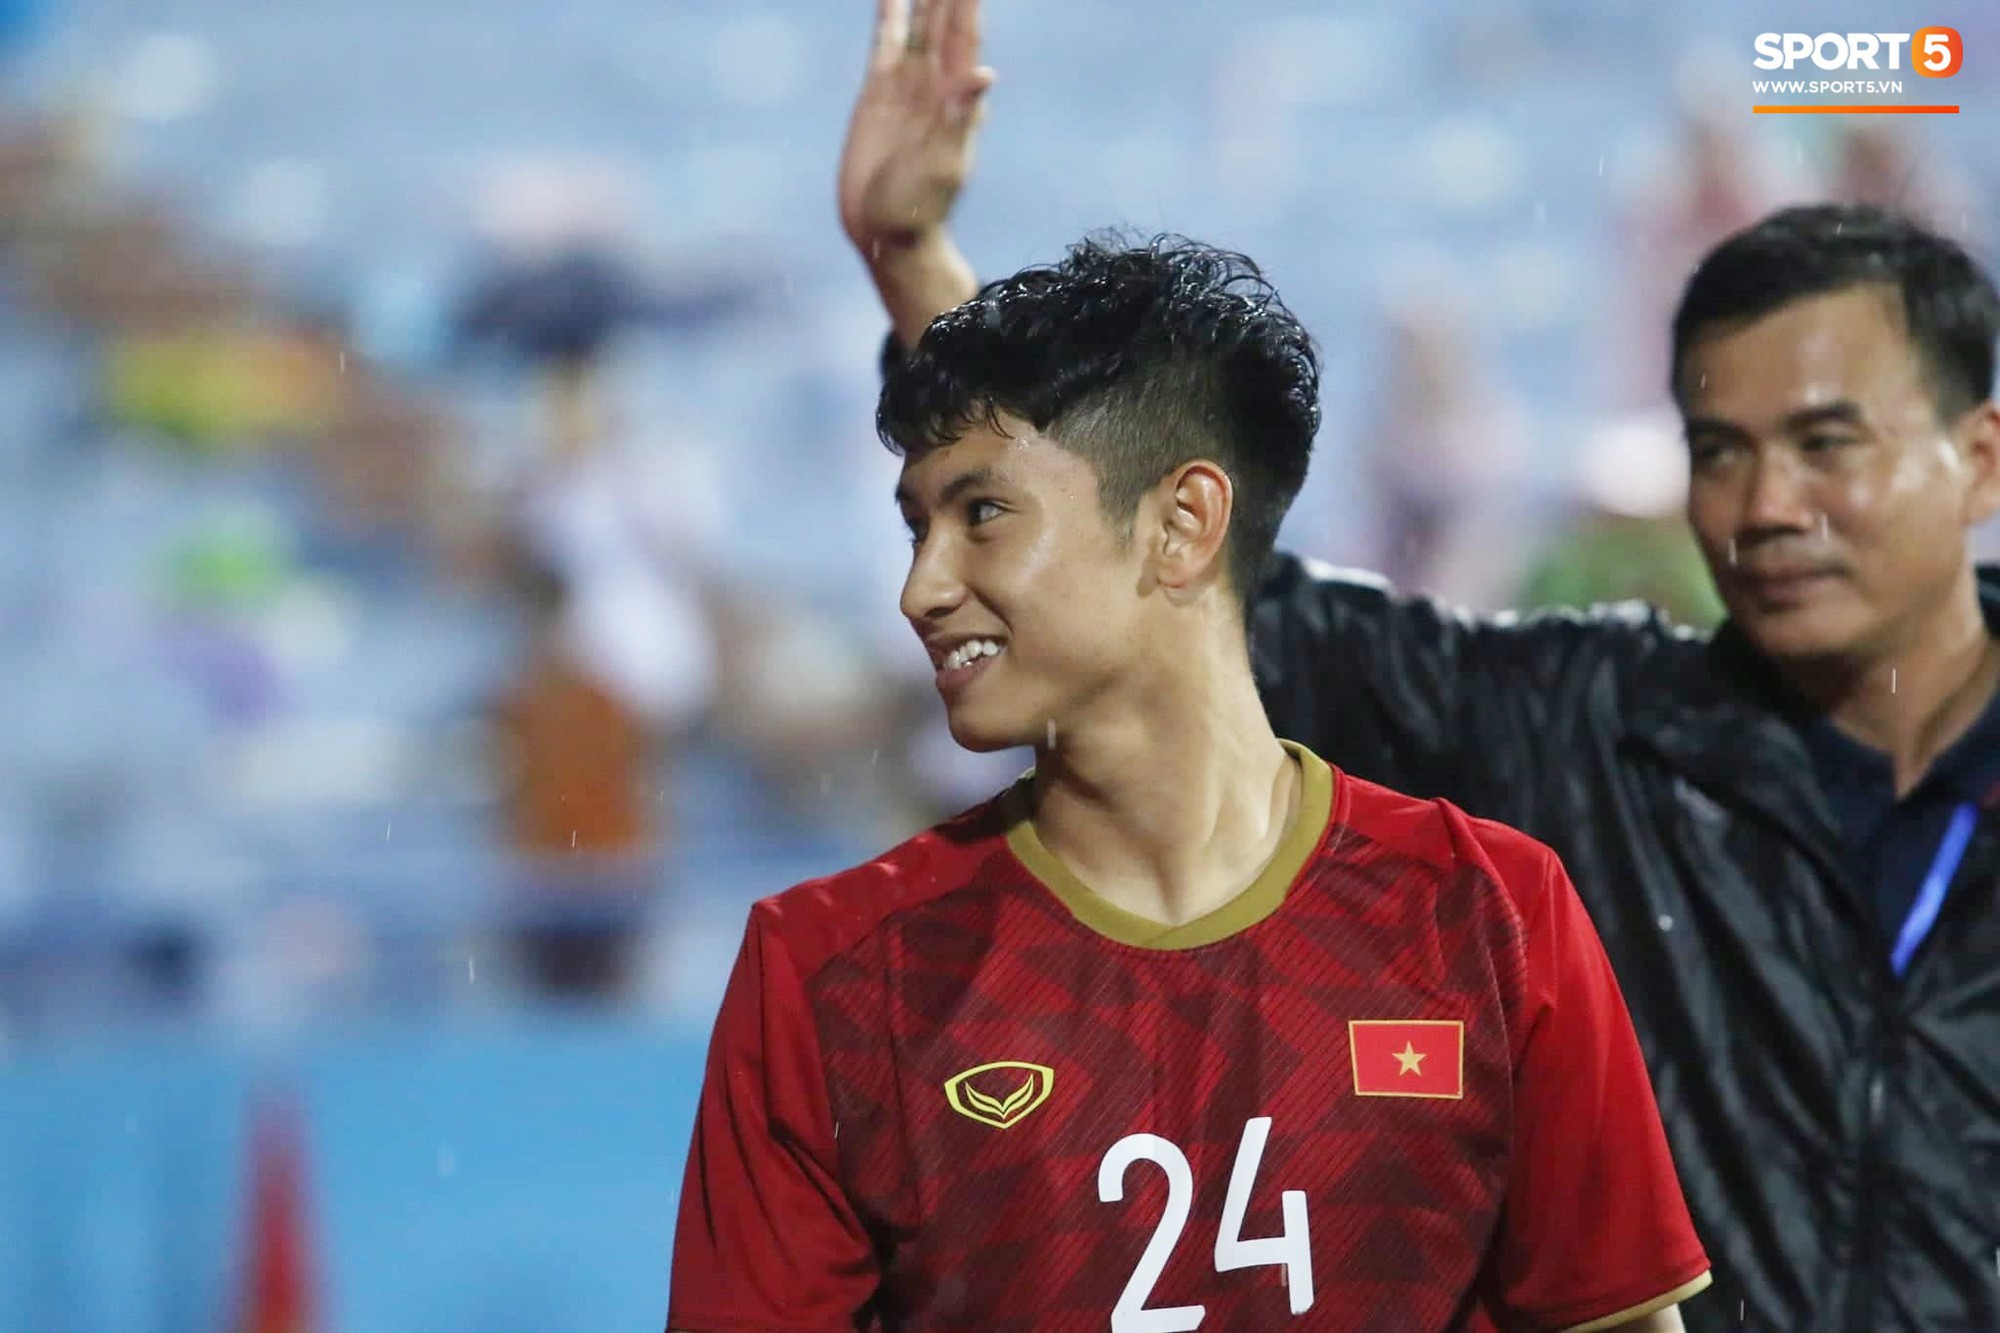 U23 Việt Nam đội mưa đi khắp khán đài cảm ơn người hâm mộ sau trận thắng U23 Myanmar - Ảnh 6.